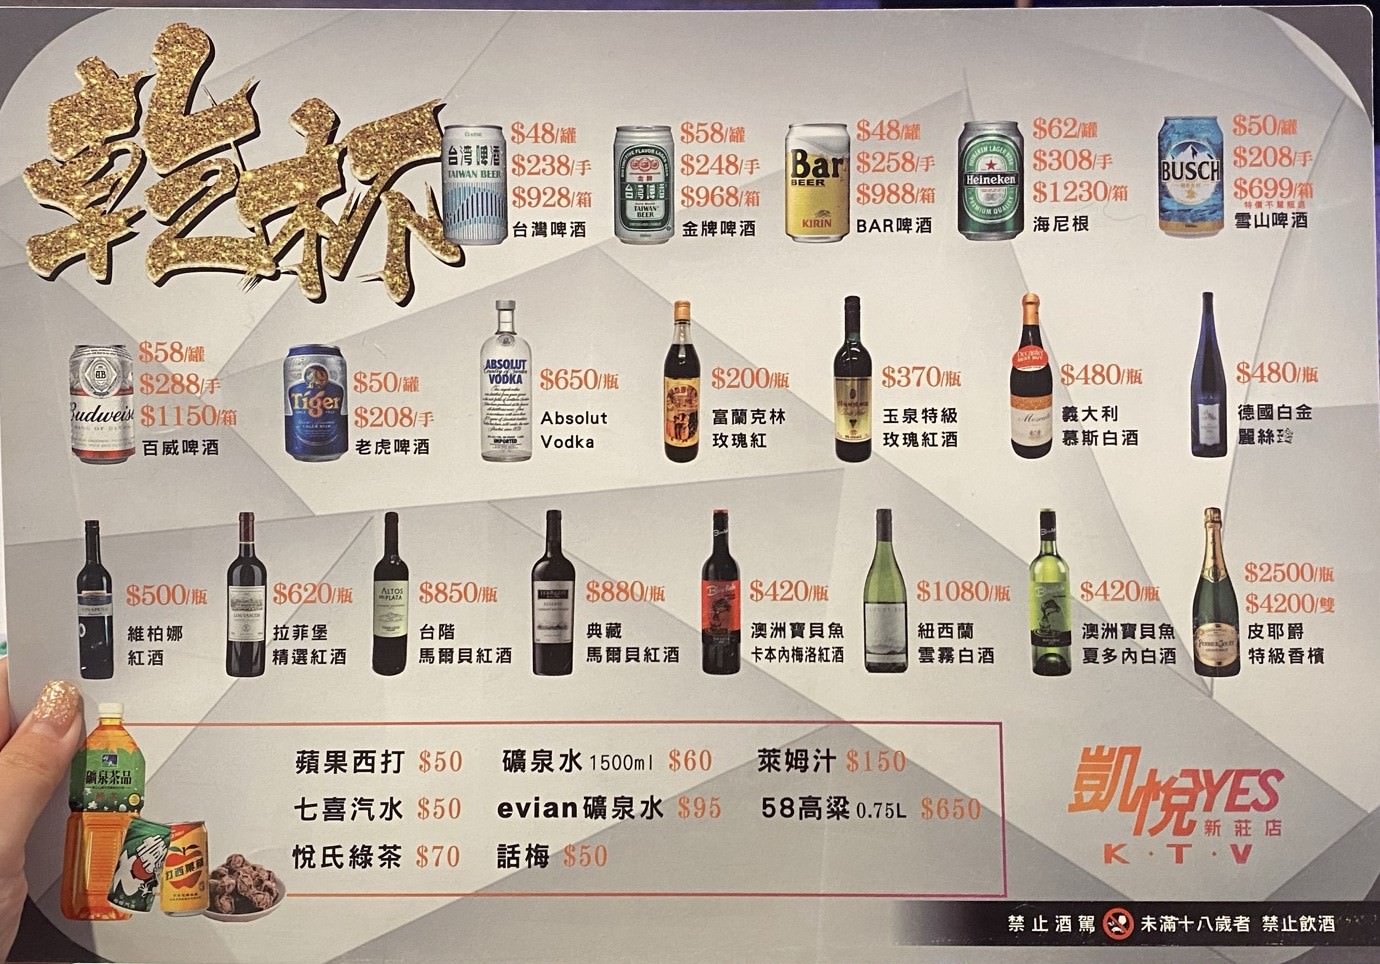 凱悅KTV 啤酒